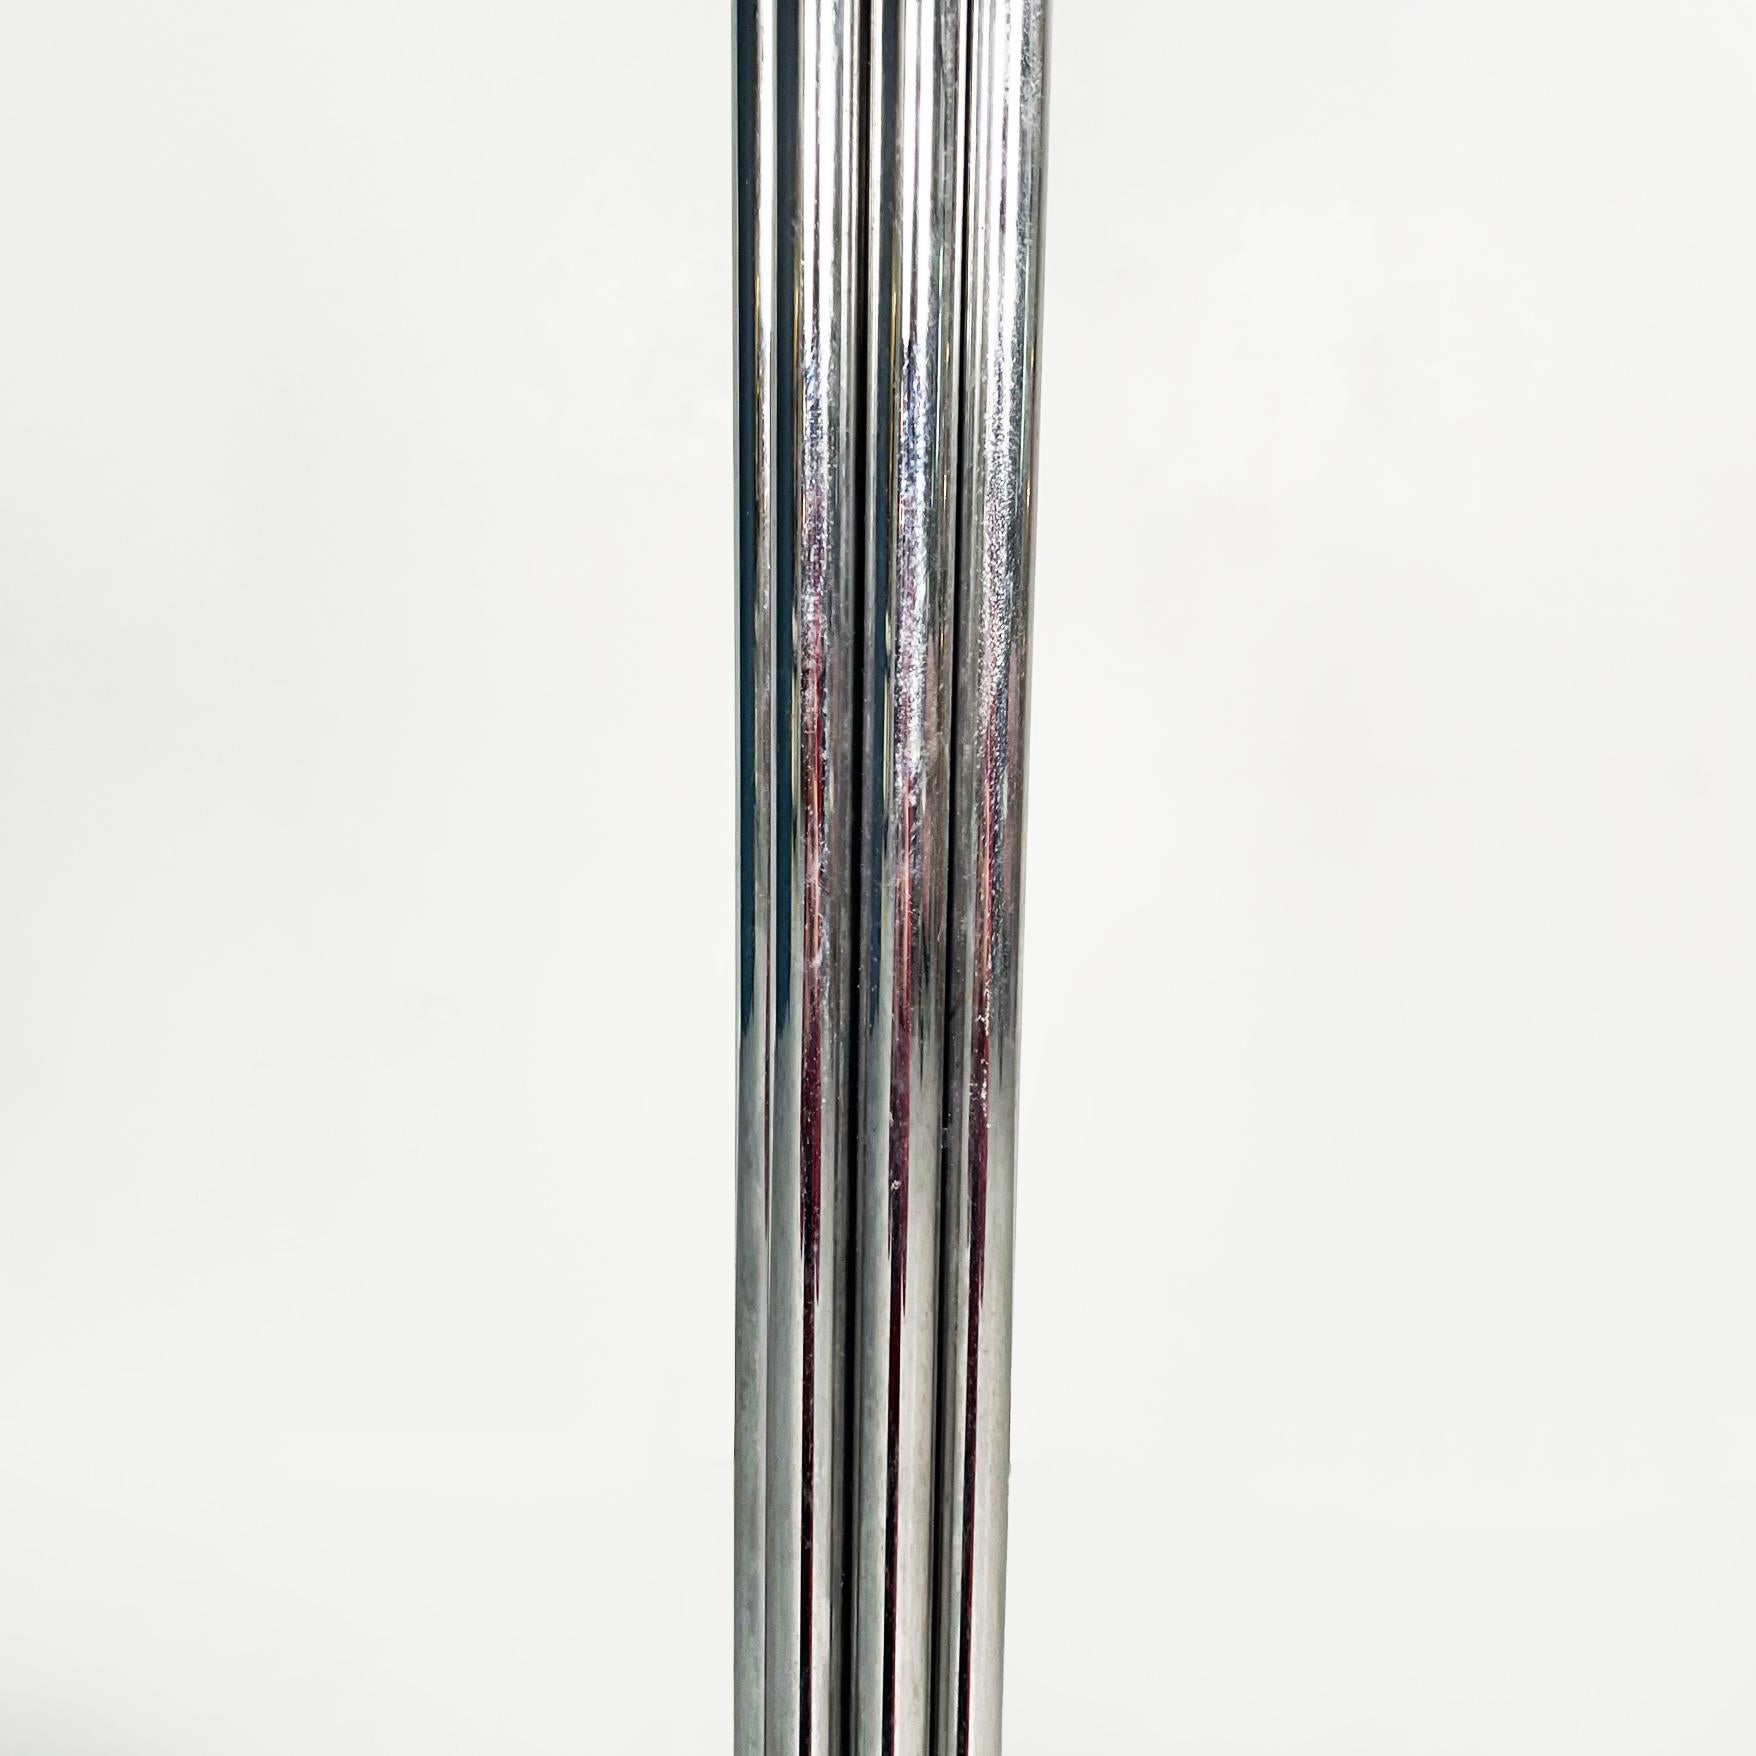 Chromed steel coatrack 'Coat Tree' by Sidse Werner for Fritz Hansen, 1971 For Sale 2